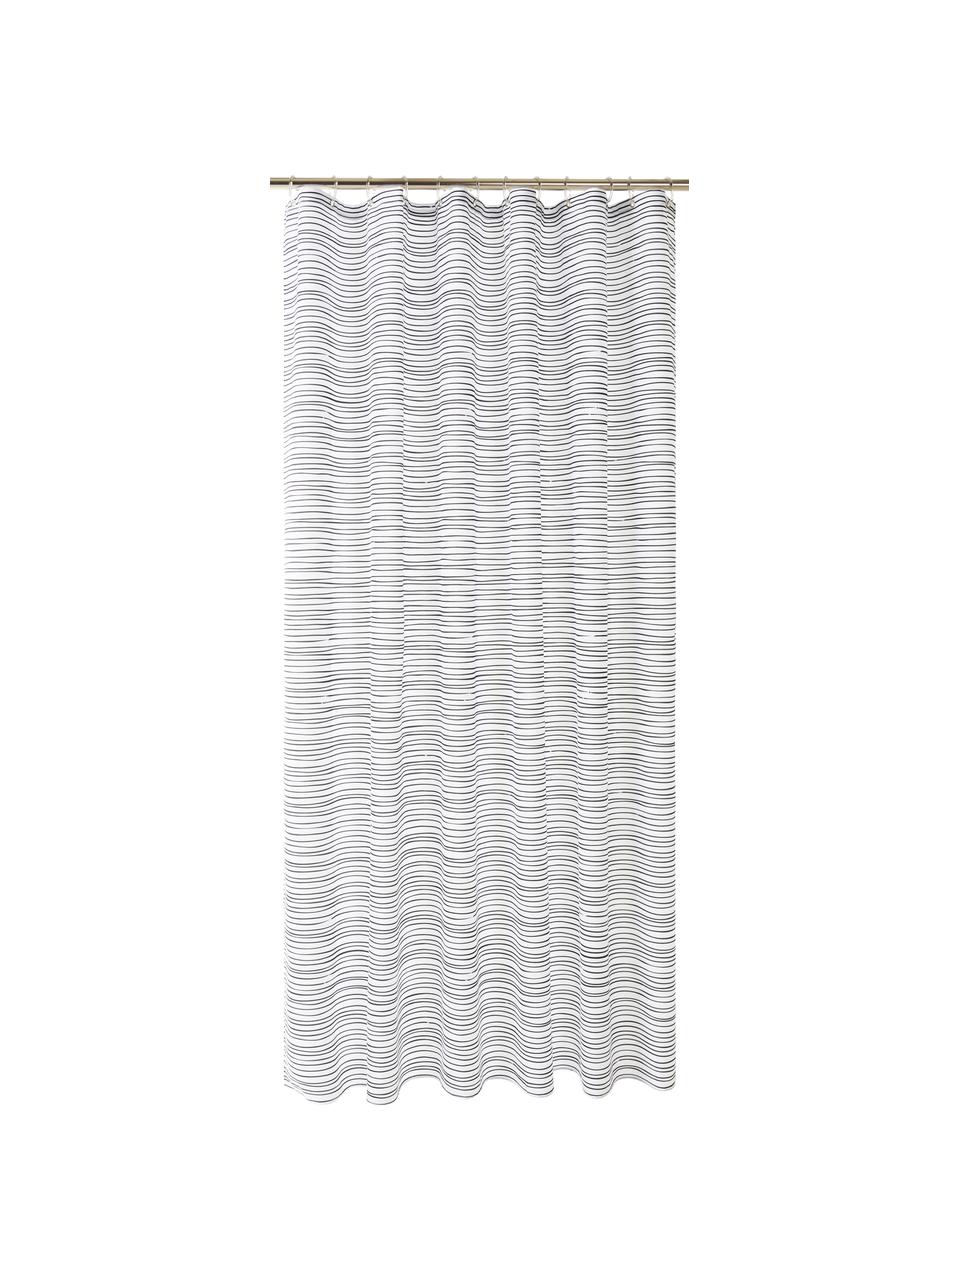 Douchegordijn Ystad, 100% polyester
Waterafstotend, niet waterdicht, Wit, zwart, 180 x 200 cm